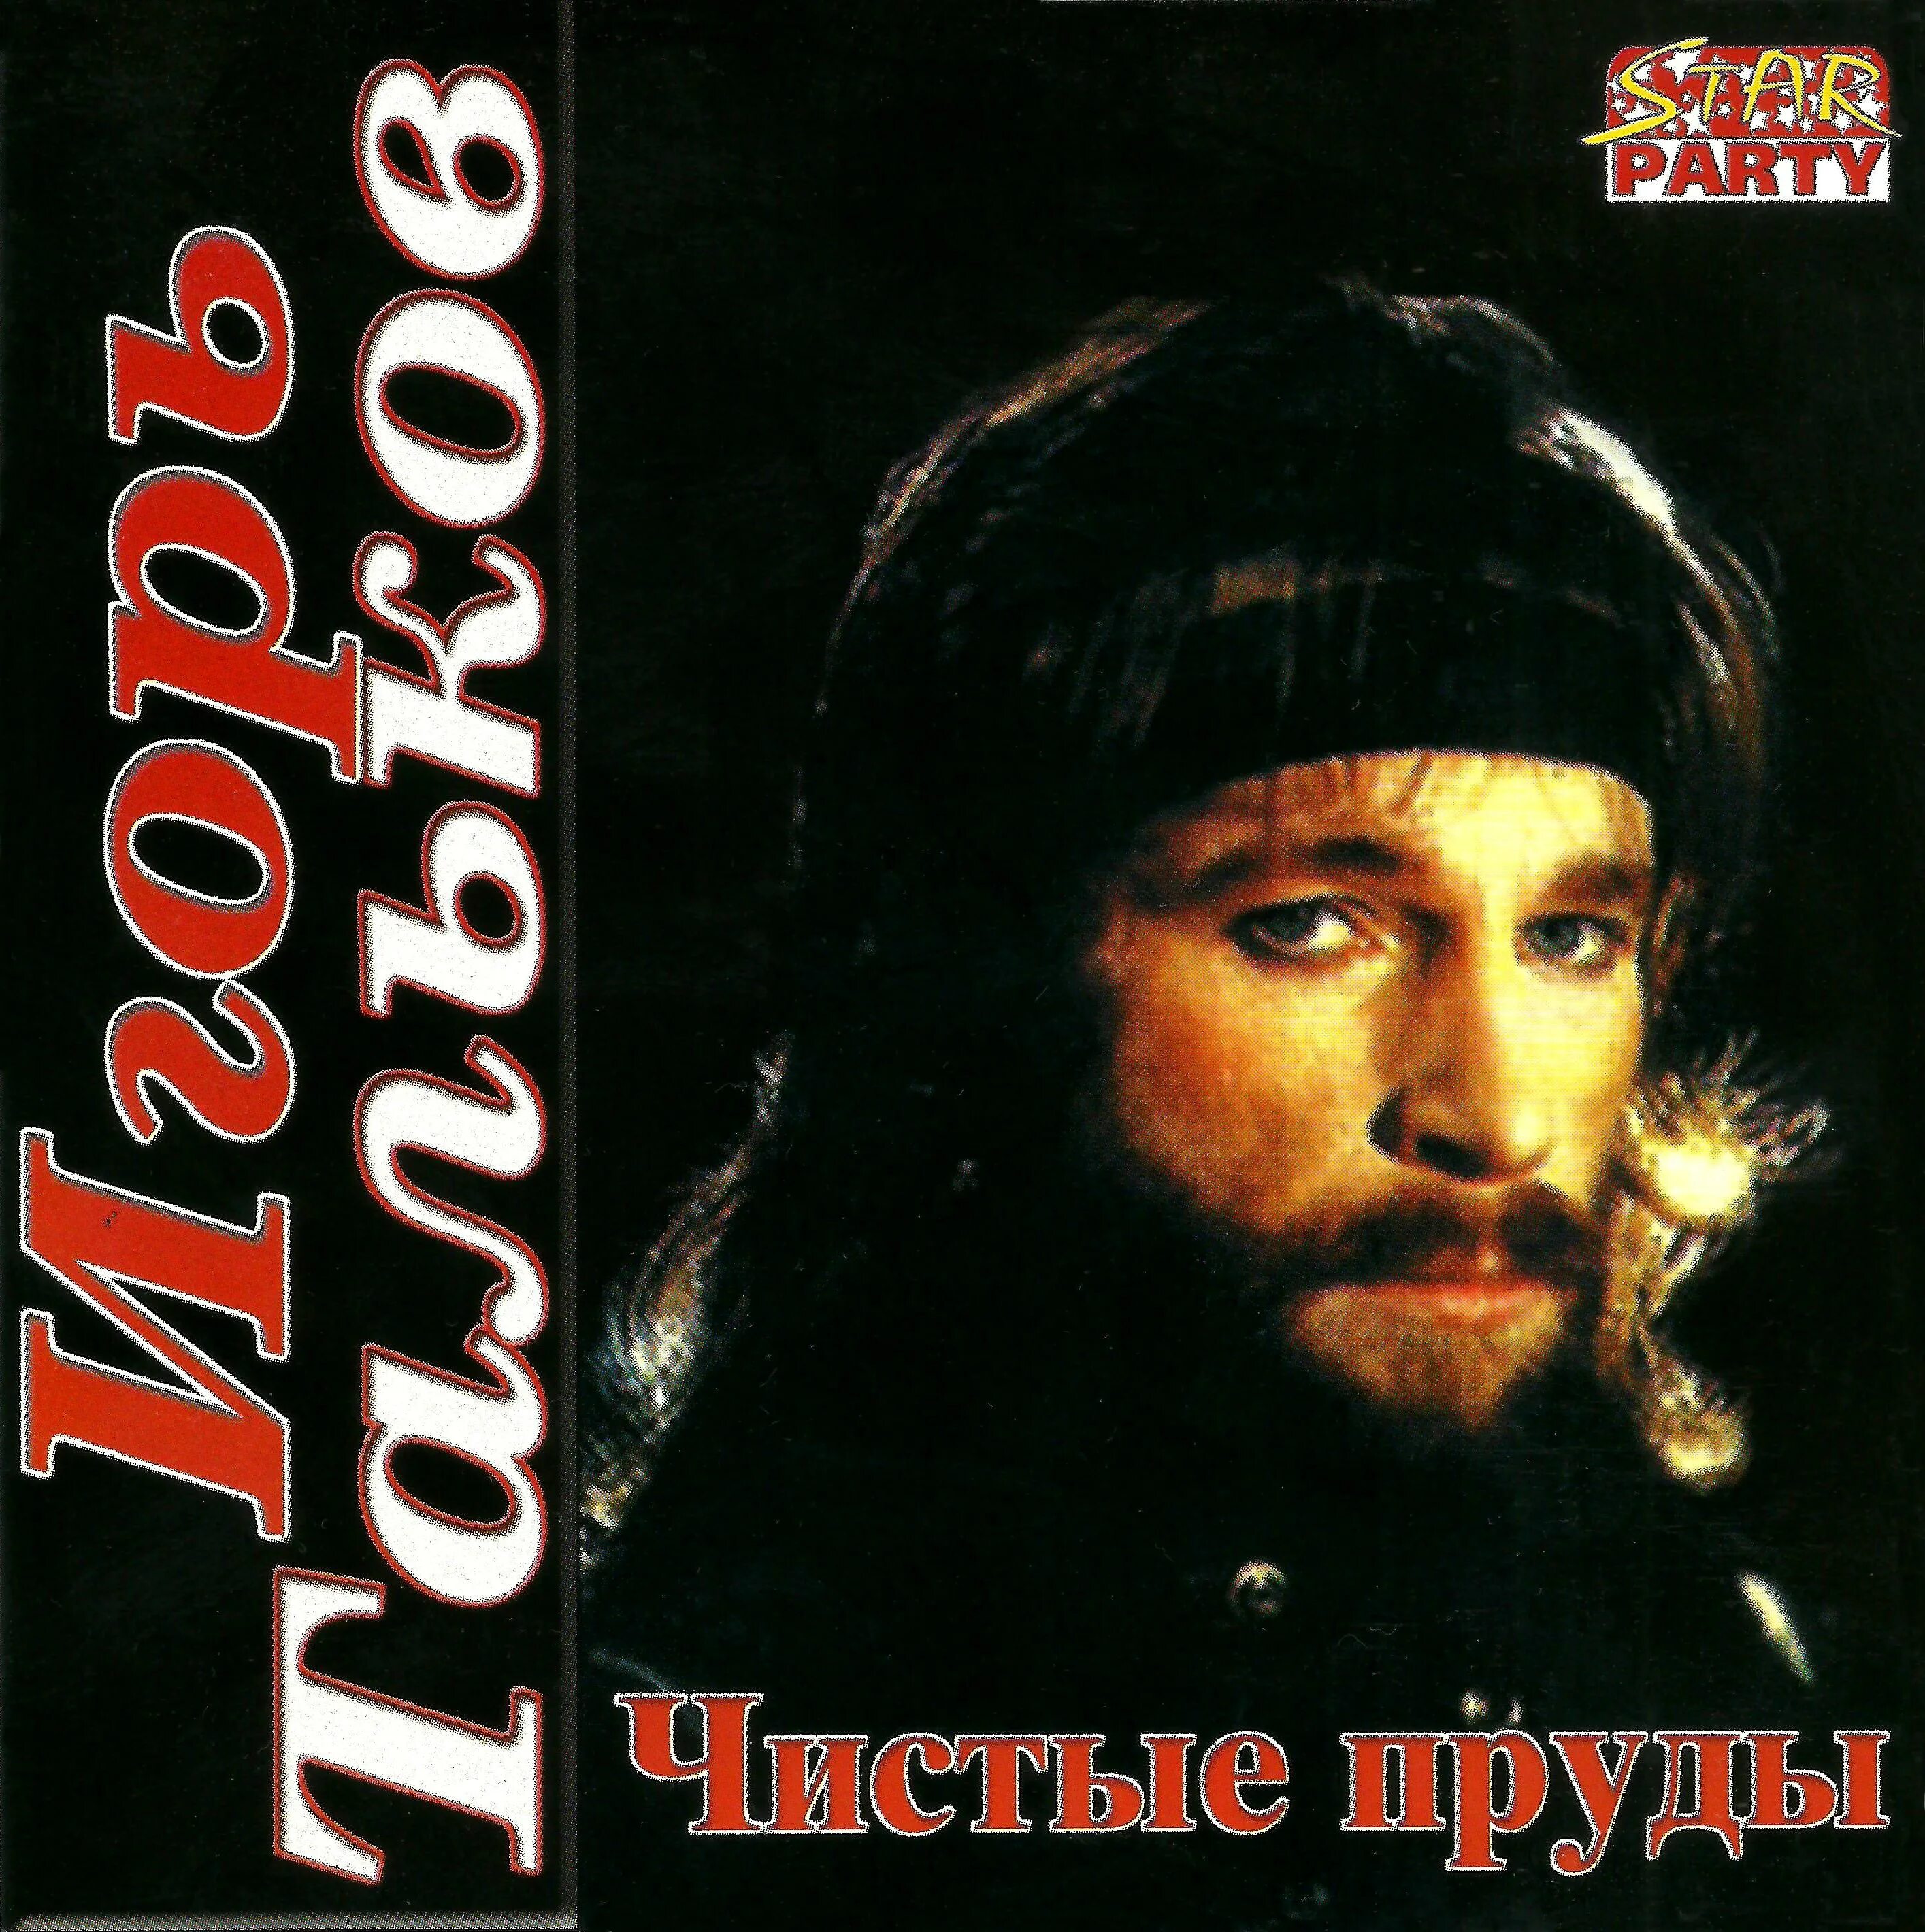 Пластинка Игоря Талькова чистые пруды. Слушать песни талькова без перерыва